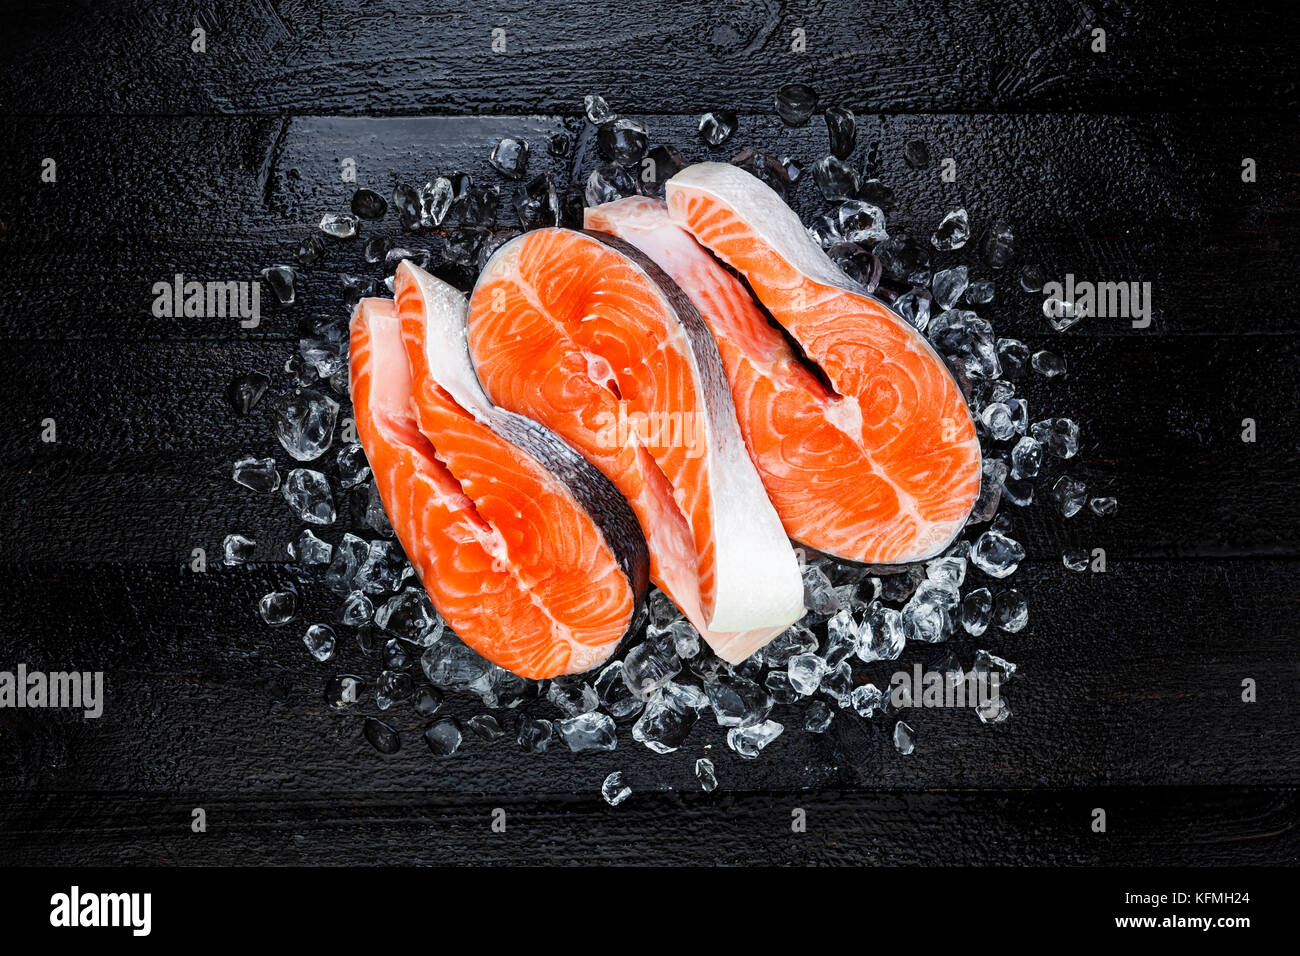 Saumon cru frais poisson rouge steak sur la glace sur une table en bois noir Vue de dessus Banque D'Images